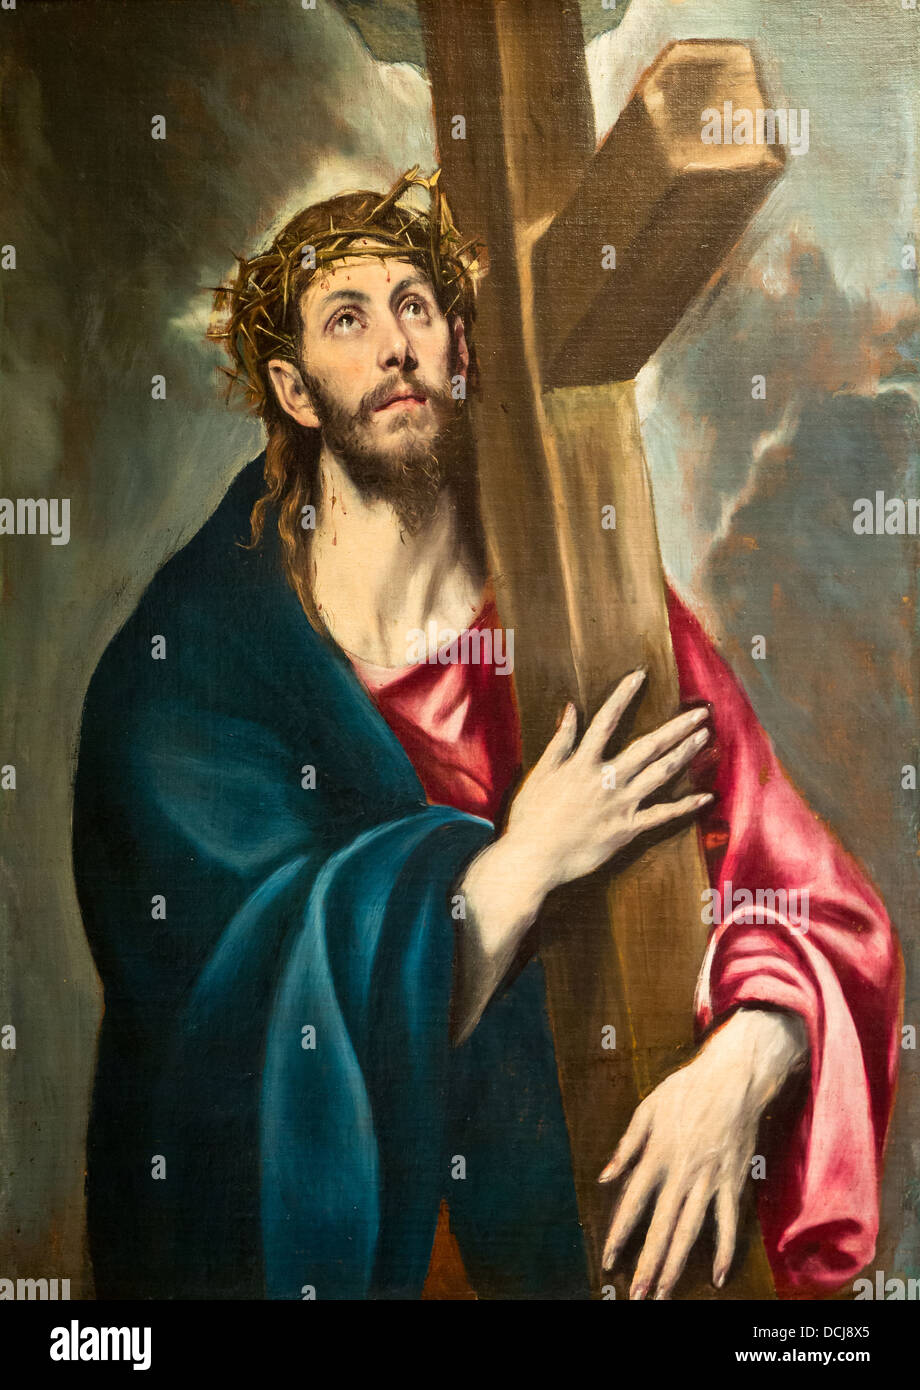 Siglo 16 - Cristo llevando la cruz - Doménikos Theotokópoulos (El Greco) (1580) - Óleo sobre lienzo Foto de stock